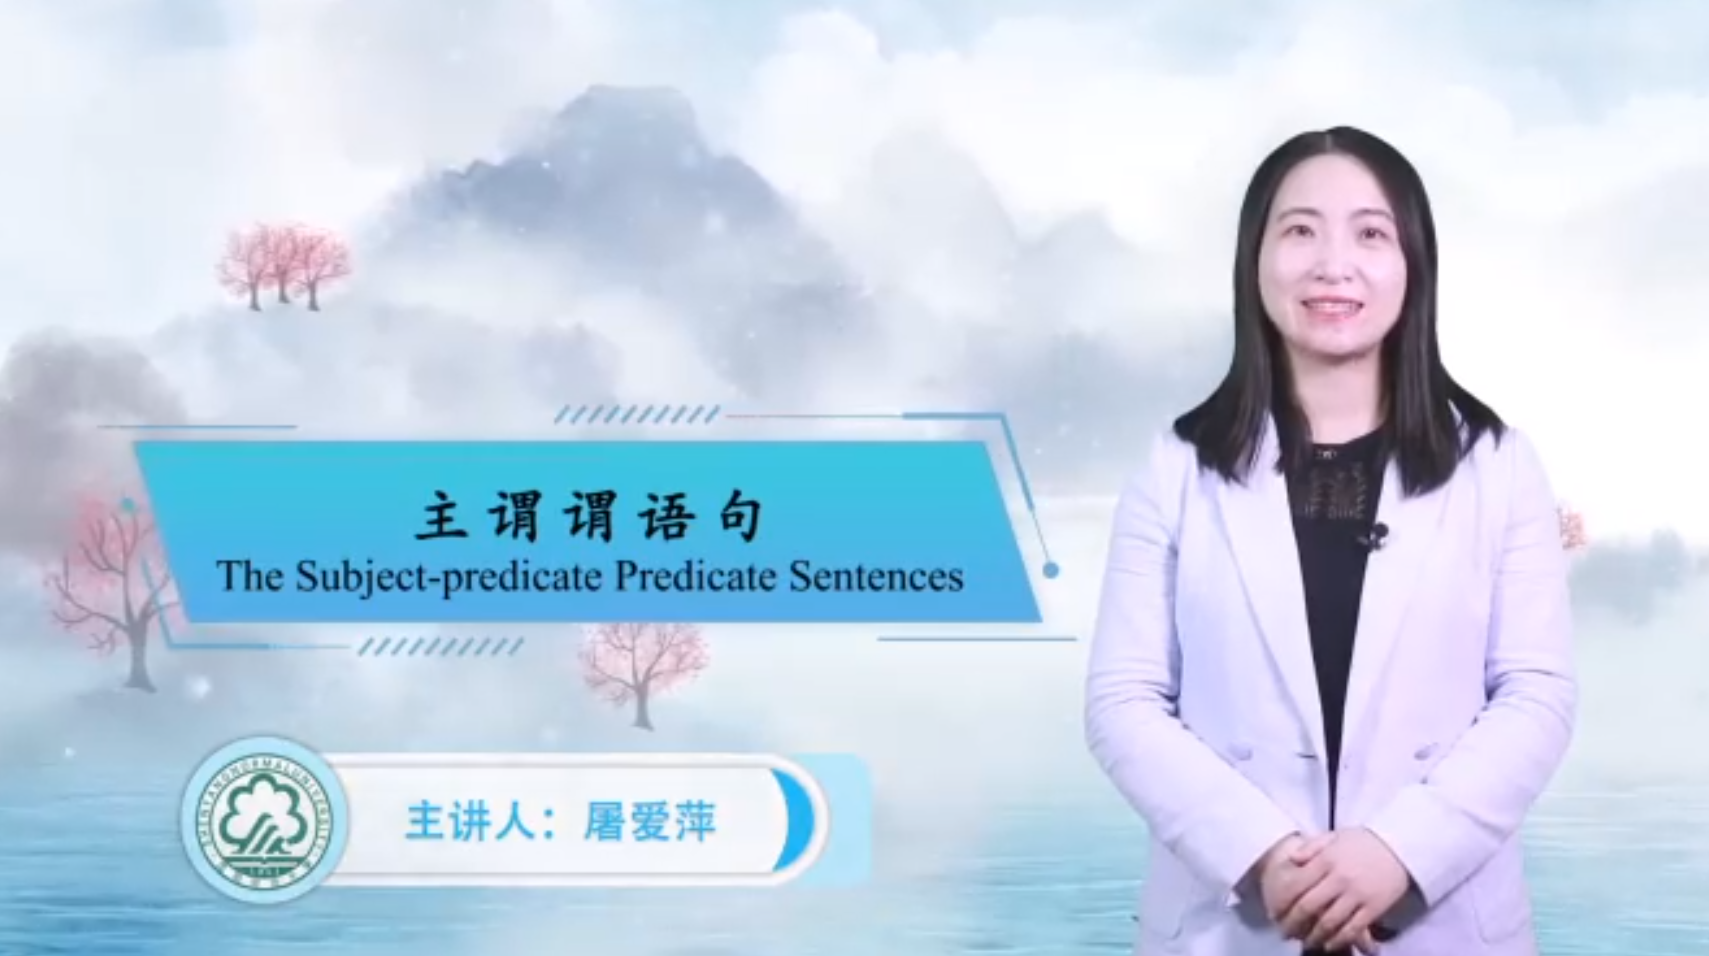 subject-predicate predicate sentence